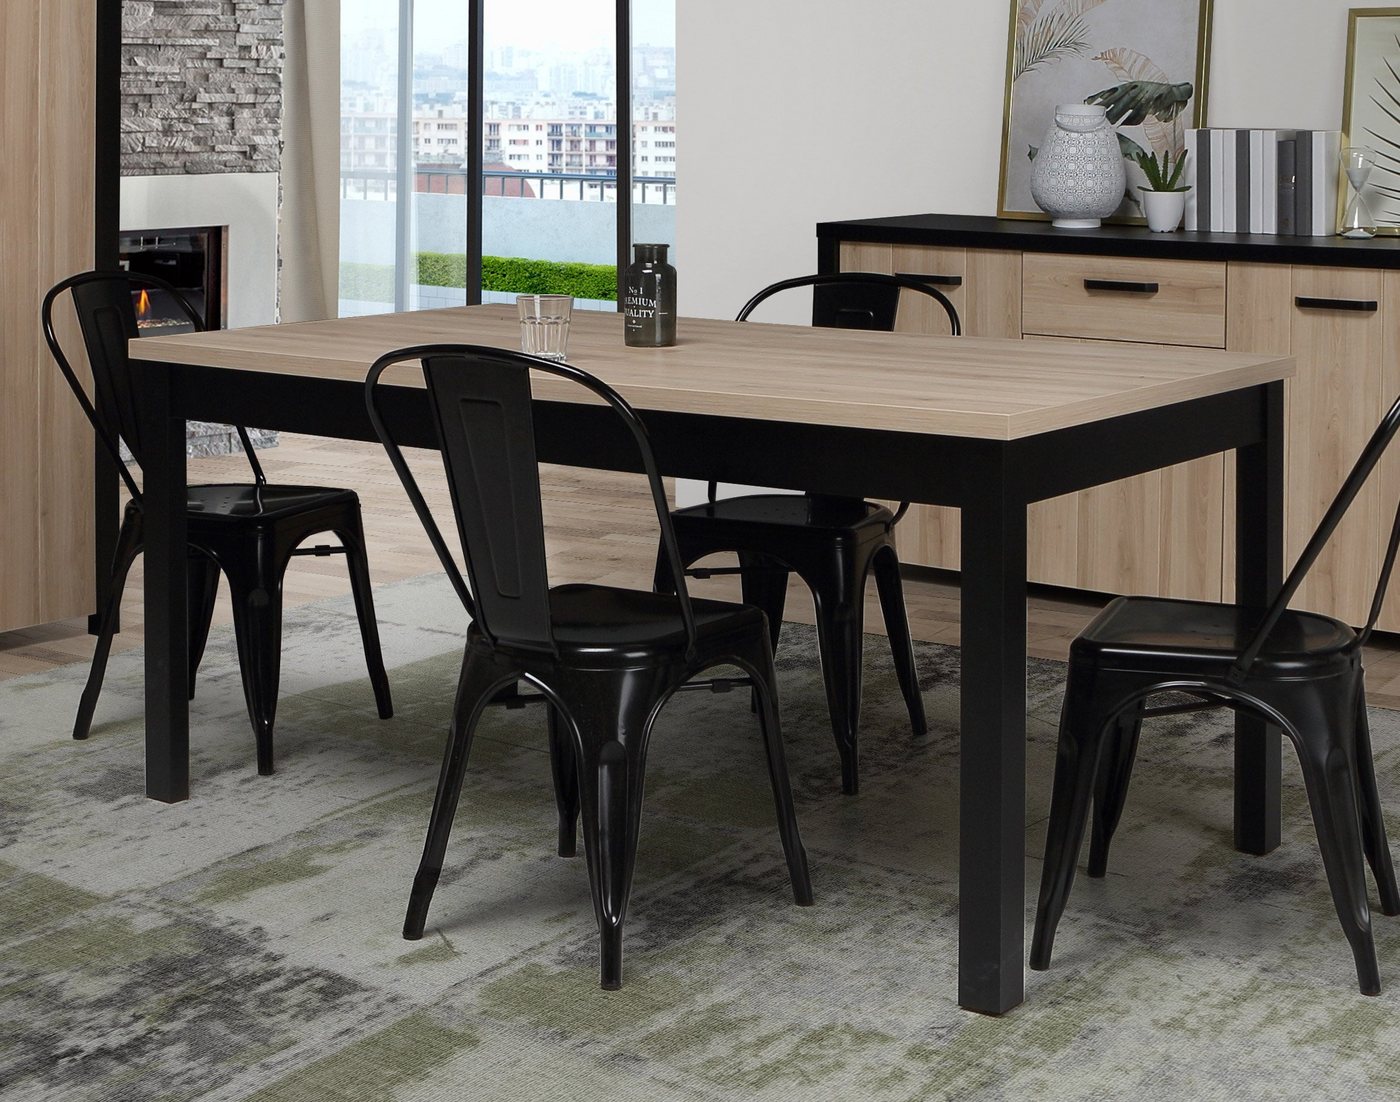 Newroom Esstisch Colaro, Esstisch Sonoma Eiche und Schwarz Modern Industrial Ausziehbar Tisch von Newroom